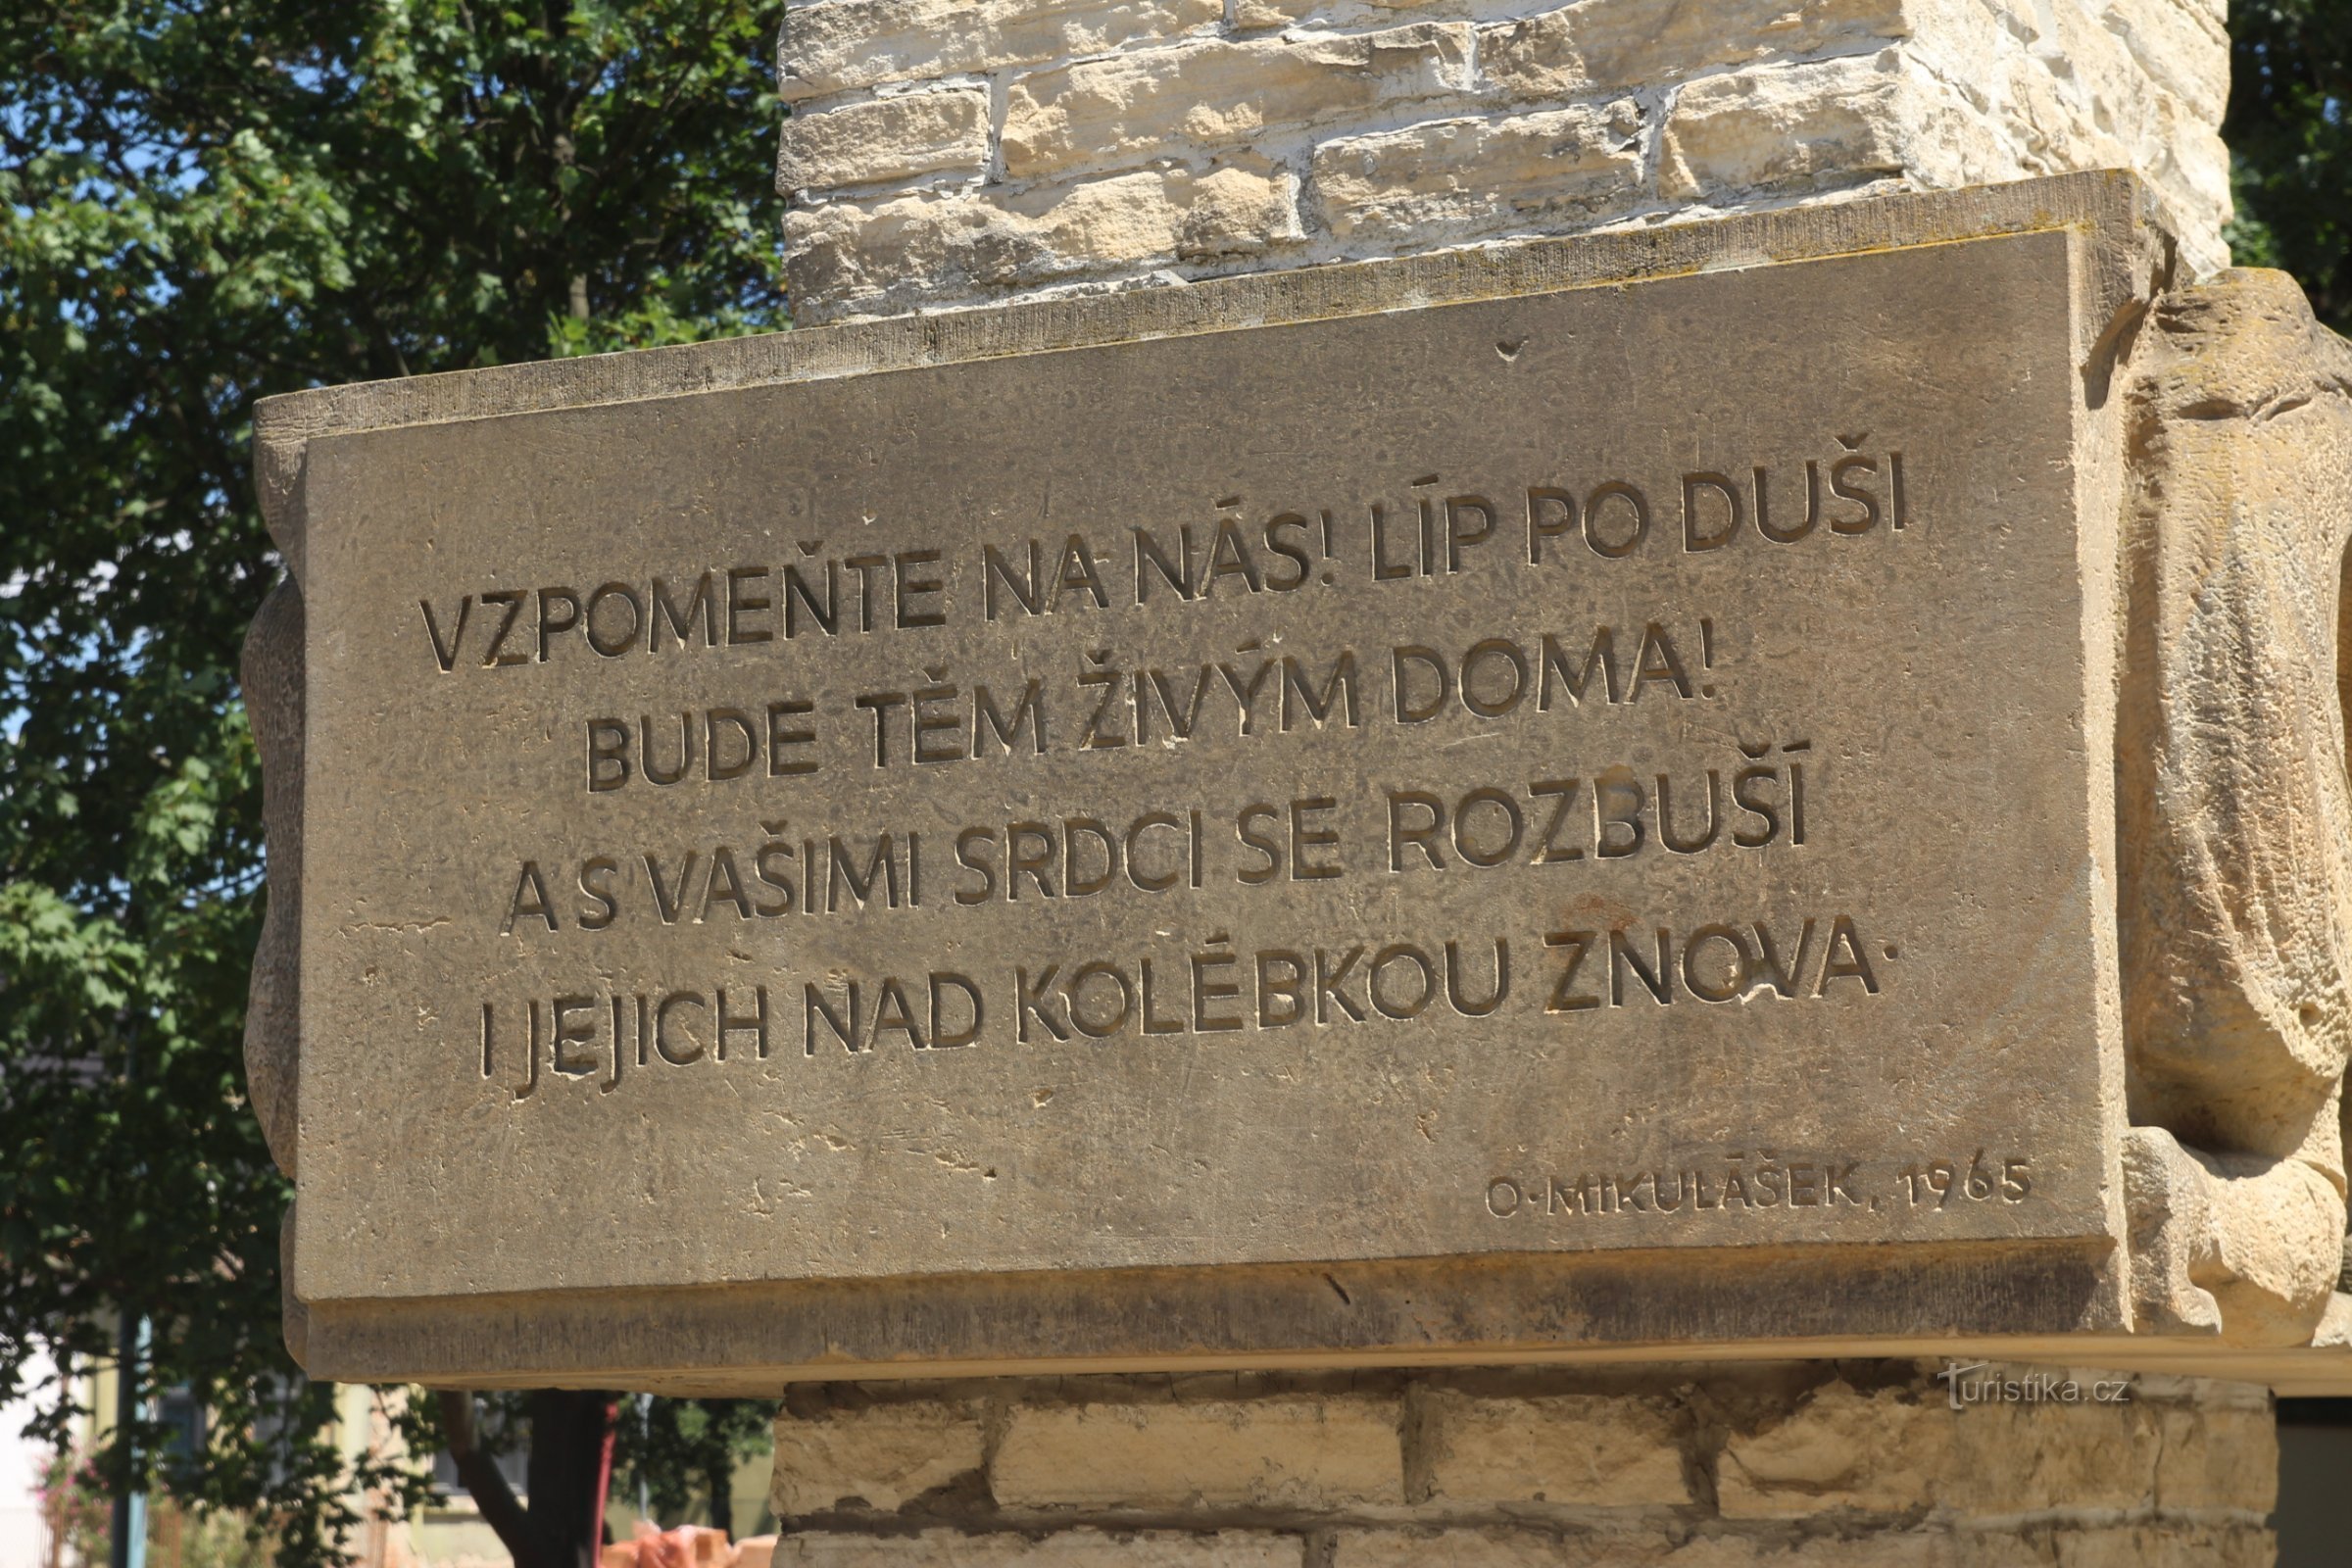 Tekst op de zijkant van het monument